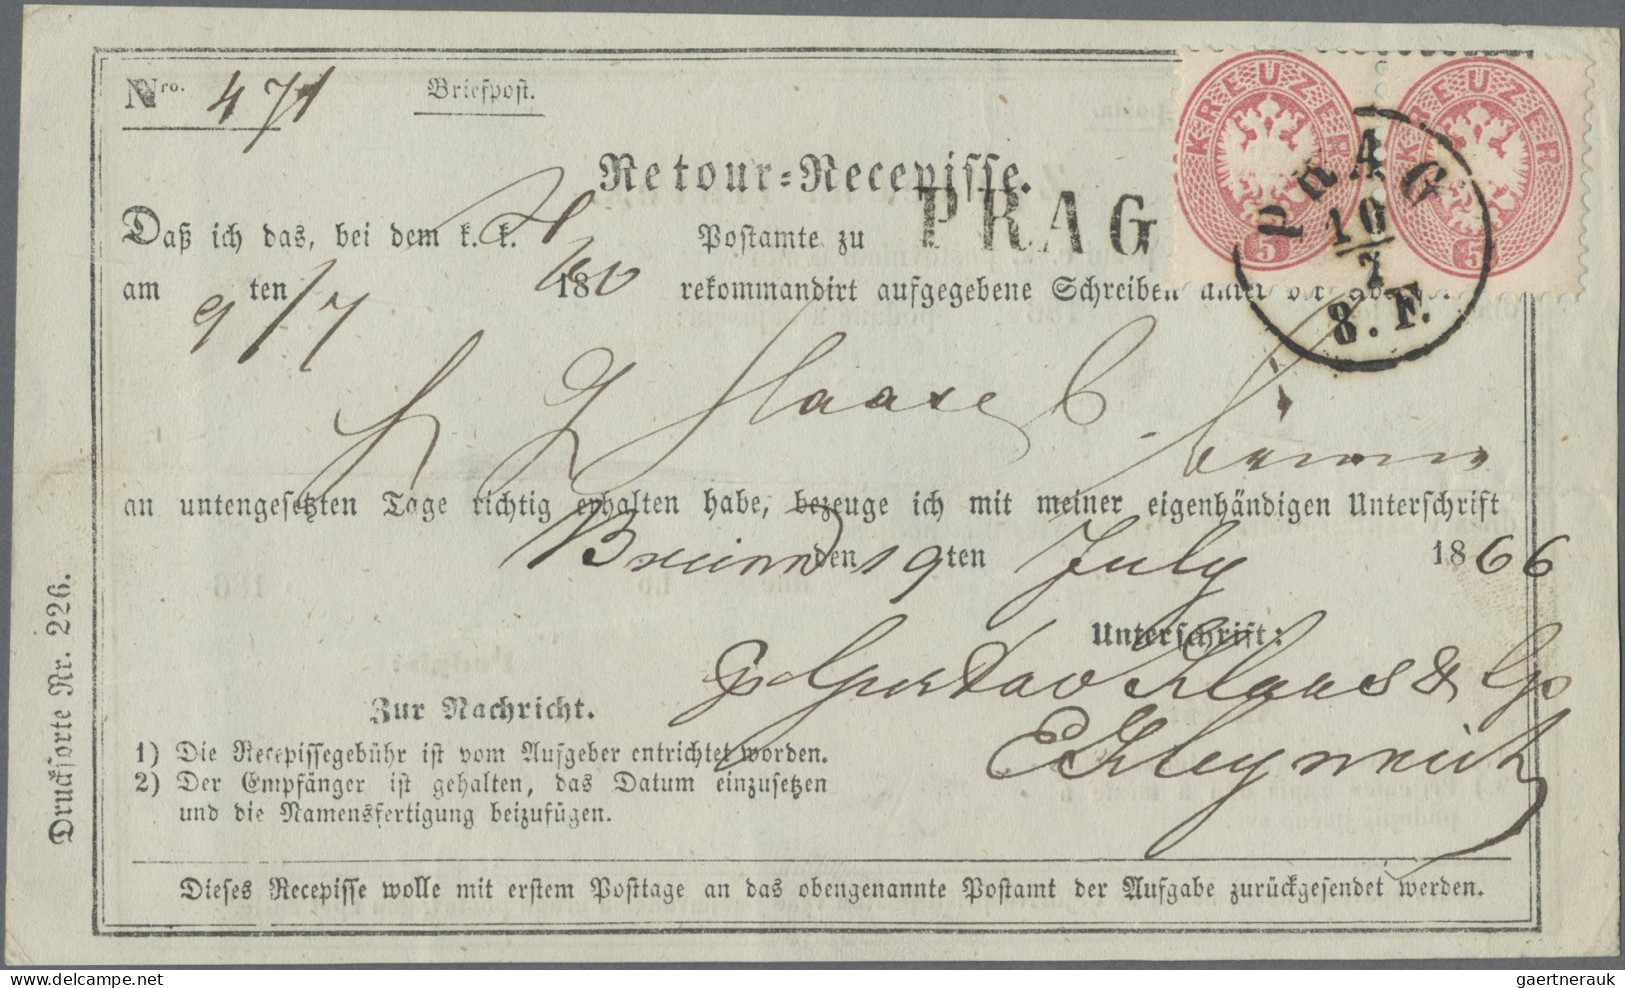 Österreich: 1851/1907, Spezial-Sammlung von 22 Retour-Recepissen, praktisch alle